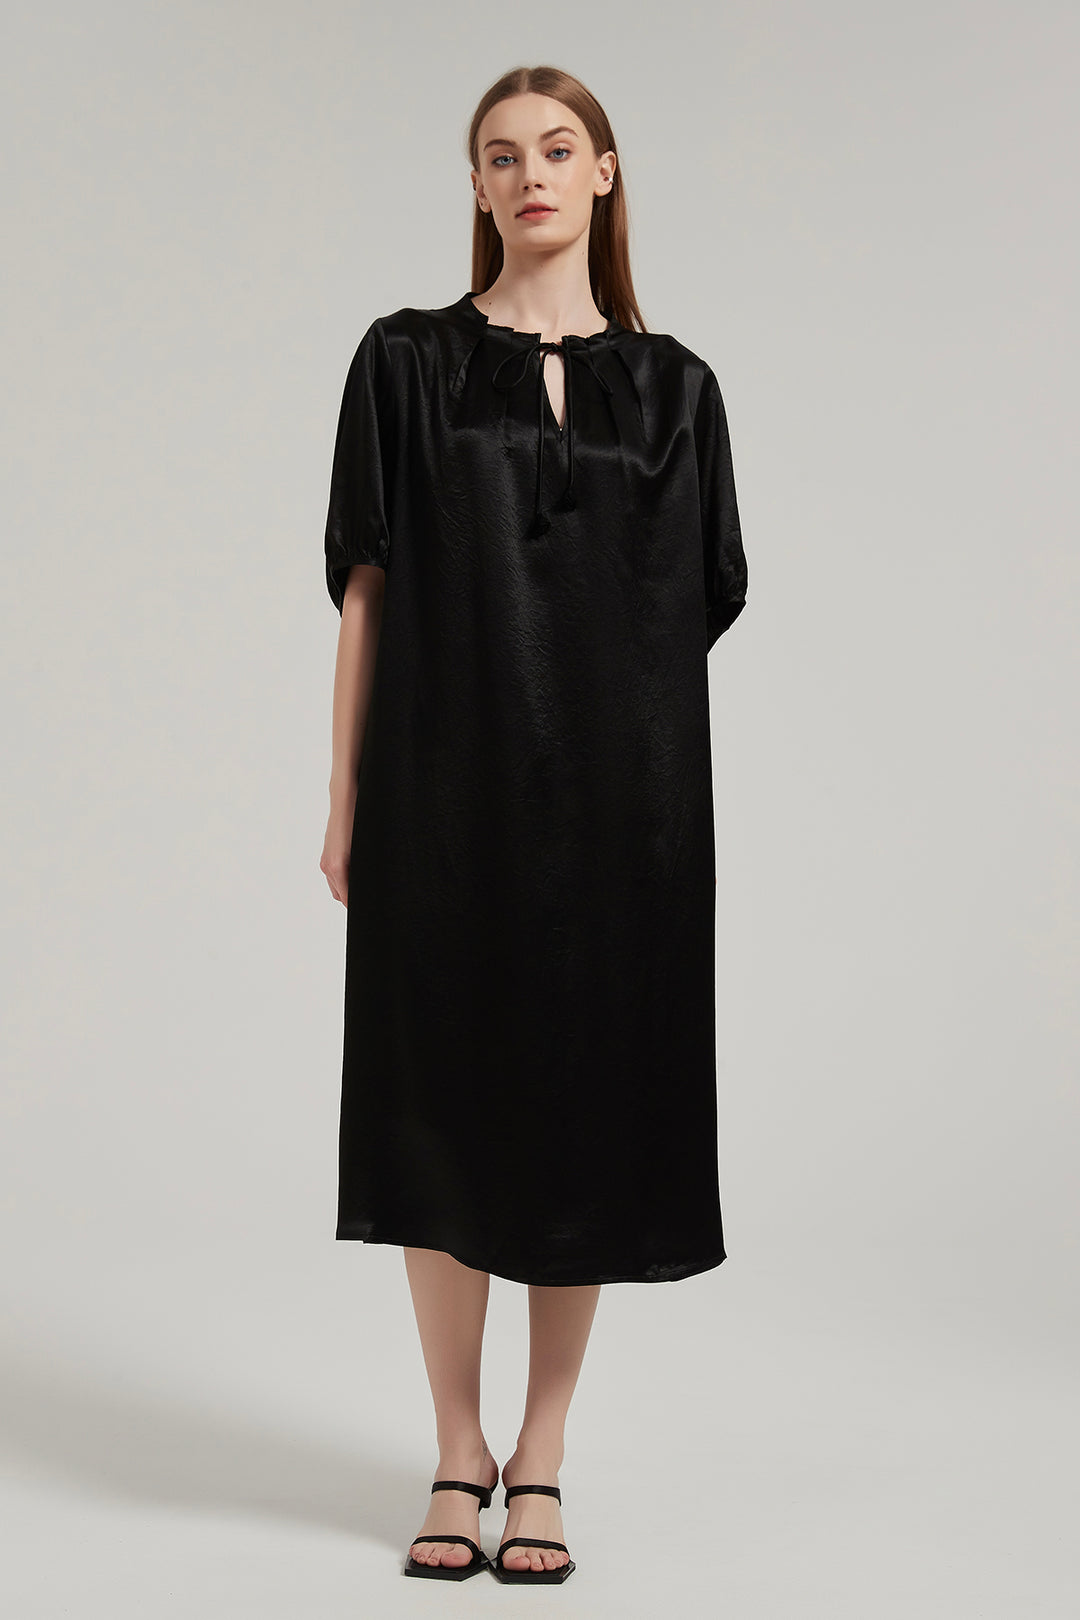 Short Sleeve Elegant Little Black Dress